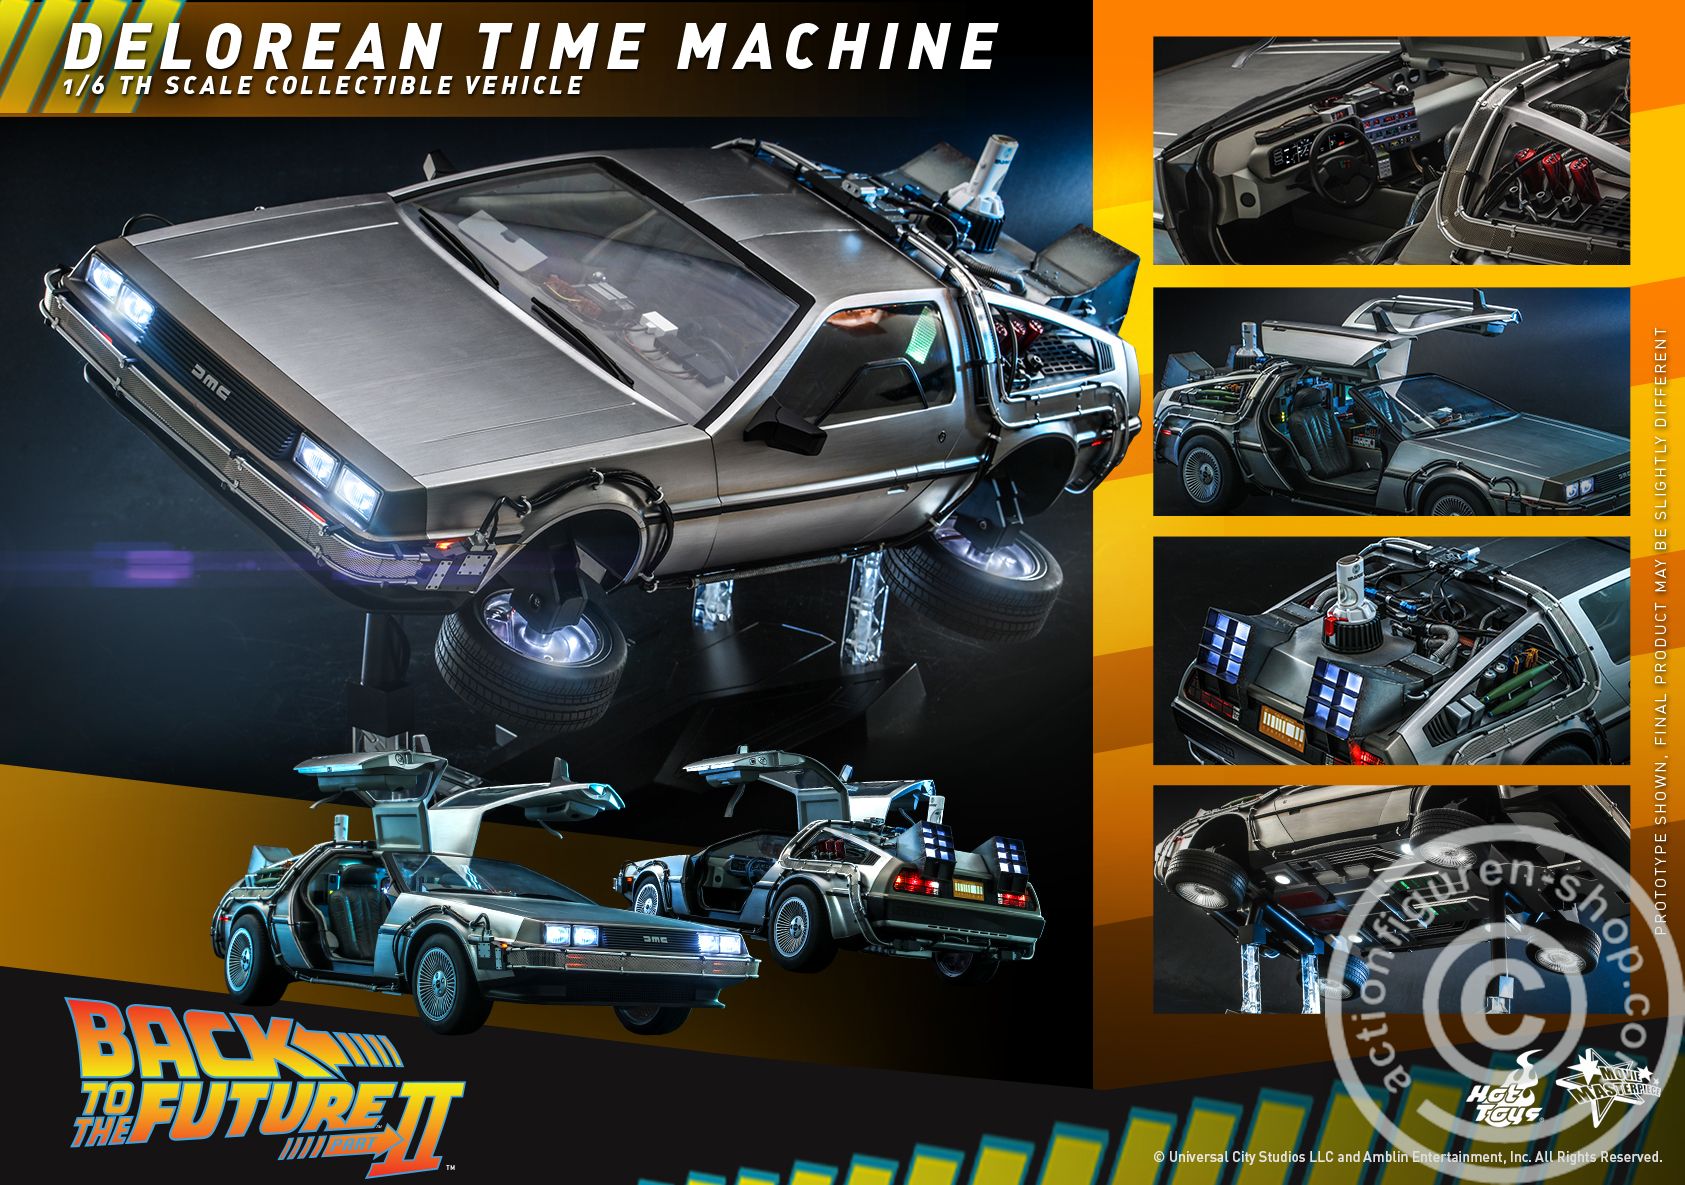 Back to the Future II - Delorean Time Machine